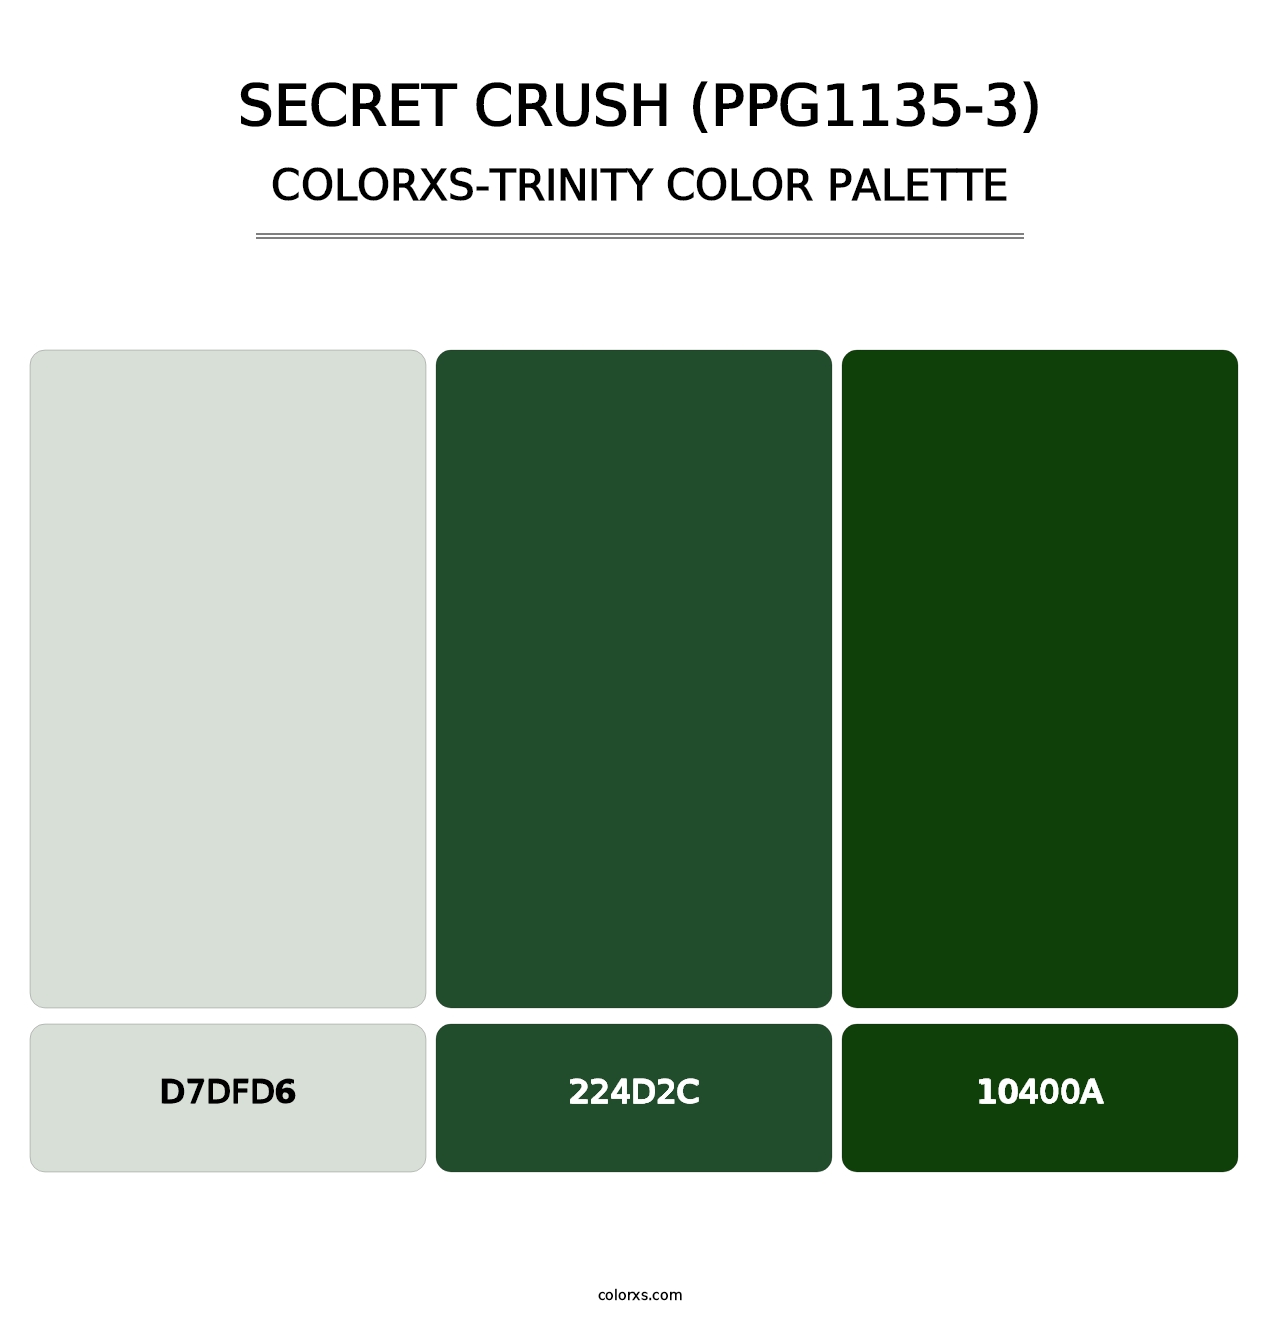 Secret Crush (PPG1135-3) - Colorxs Trinity Palette